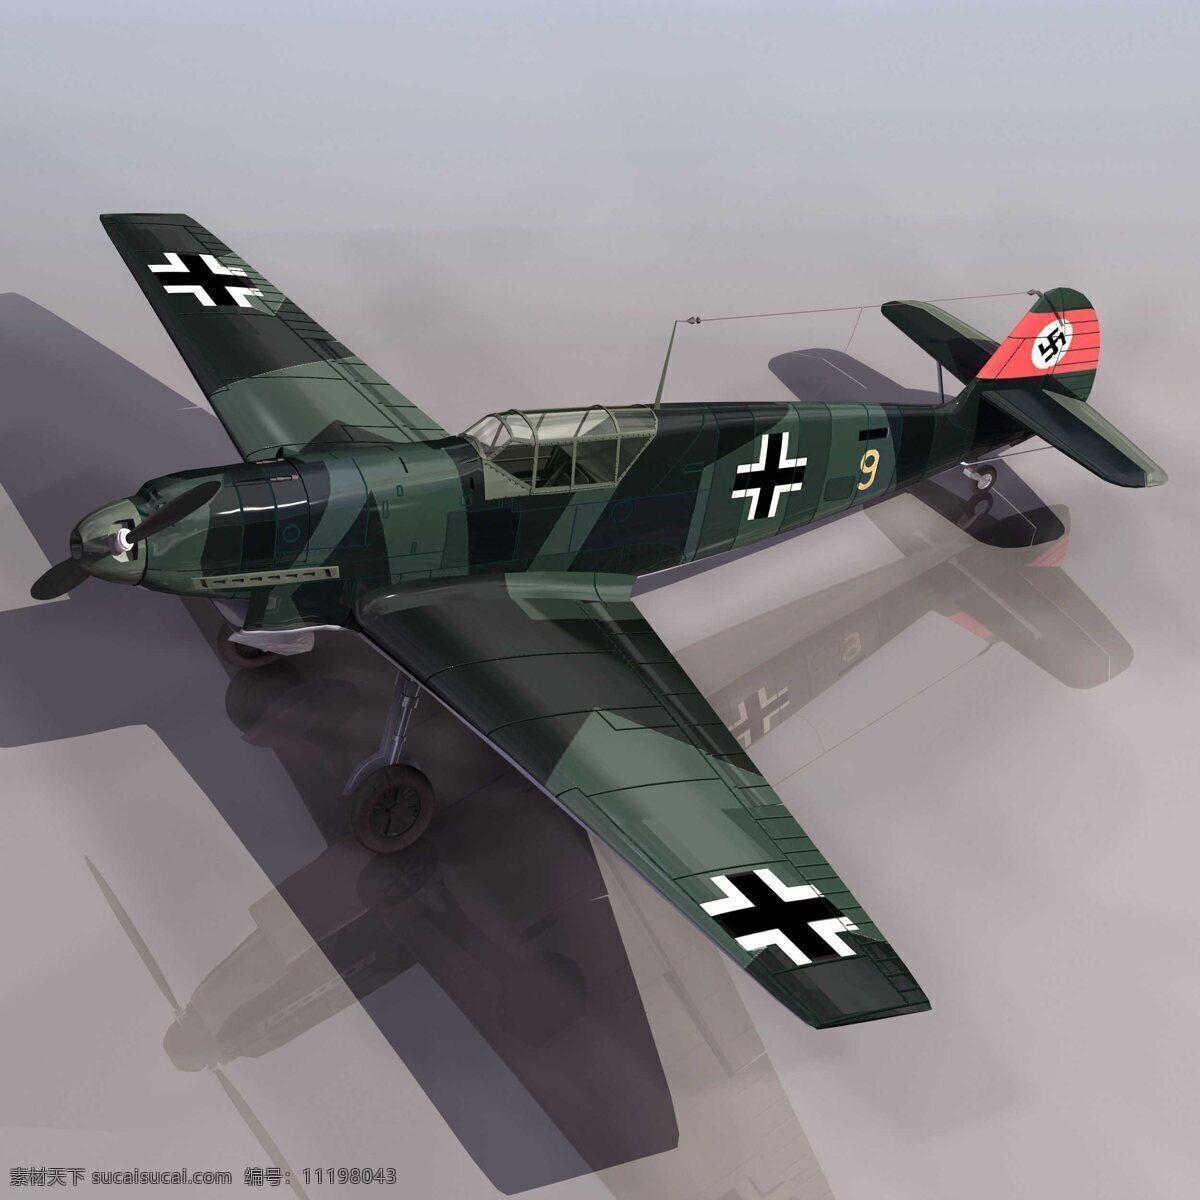 纳粹免费下载 军事模型 战斗机 纳粹 bf109b 空军武器库 3d模型素材 其他3d模型